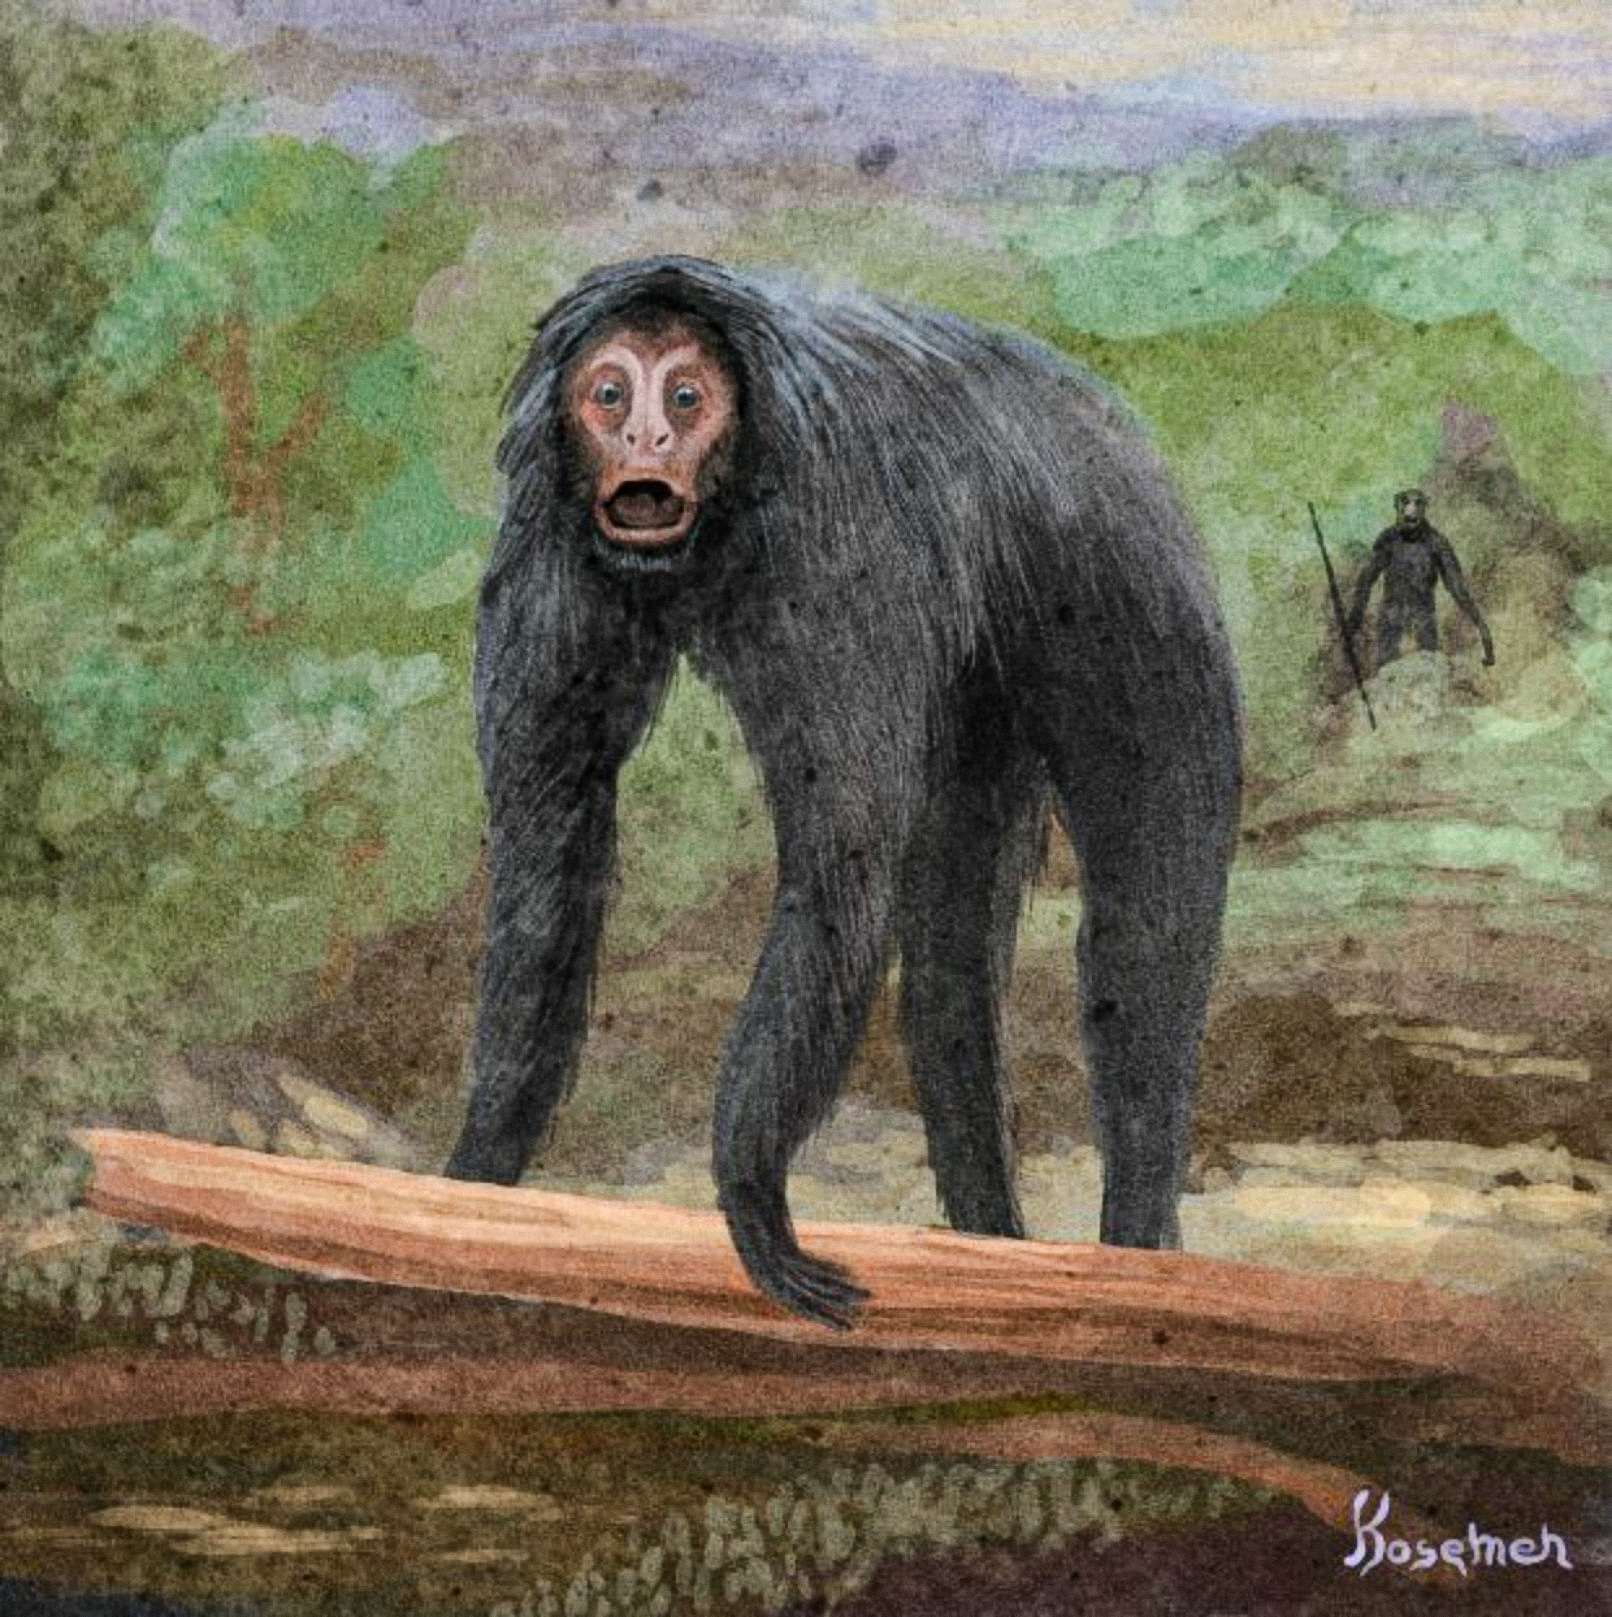 Una interpretación especulativa del evento, el otro primate representado en la espalda con una herramienta (arte de Kosemen)